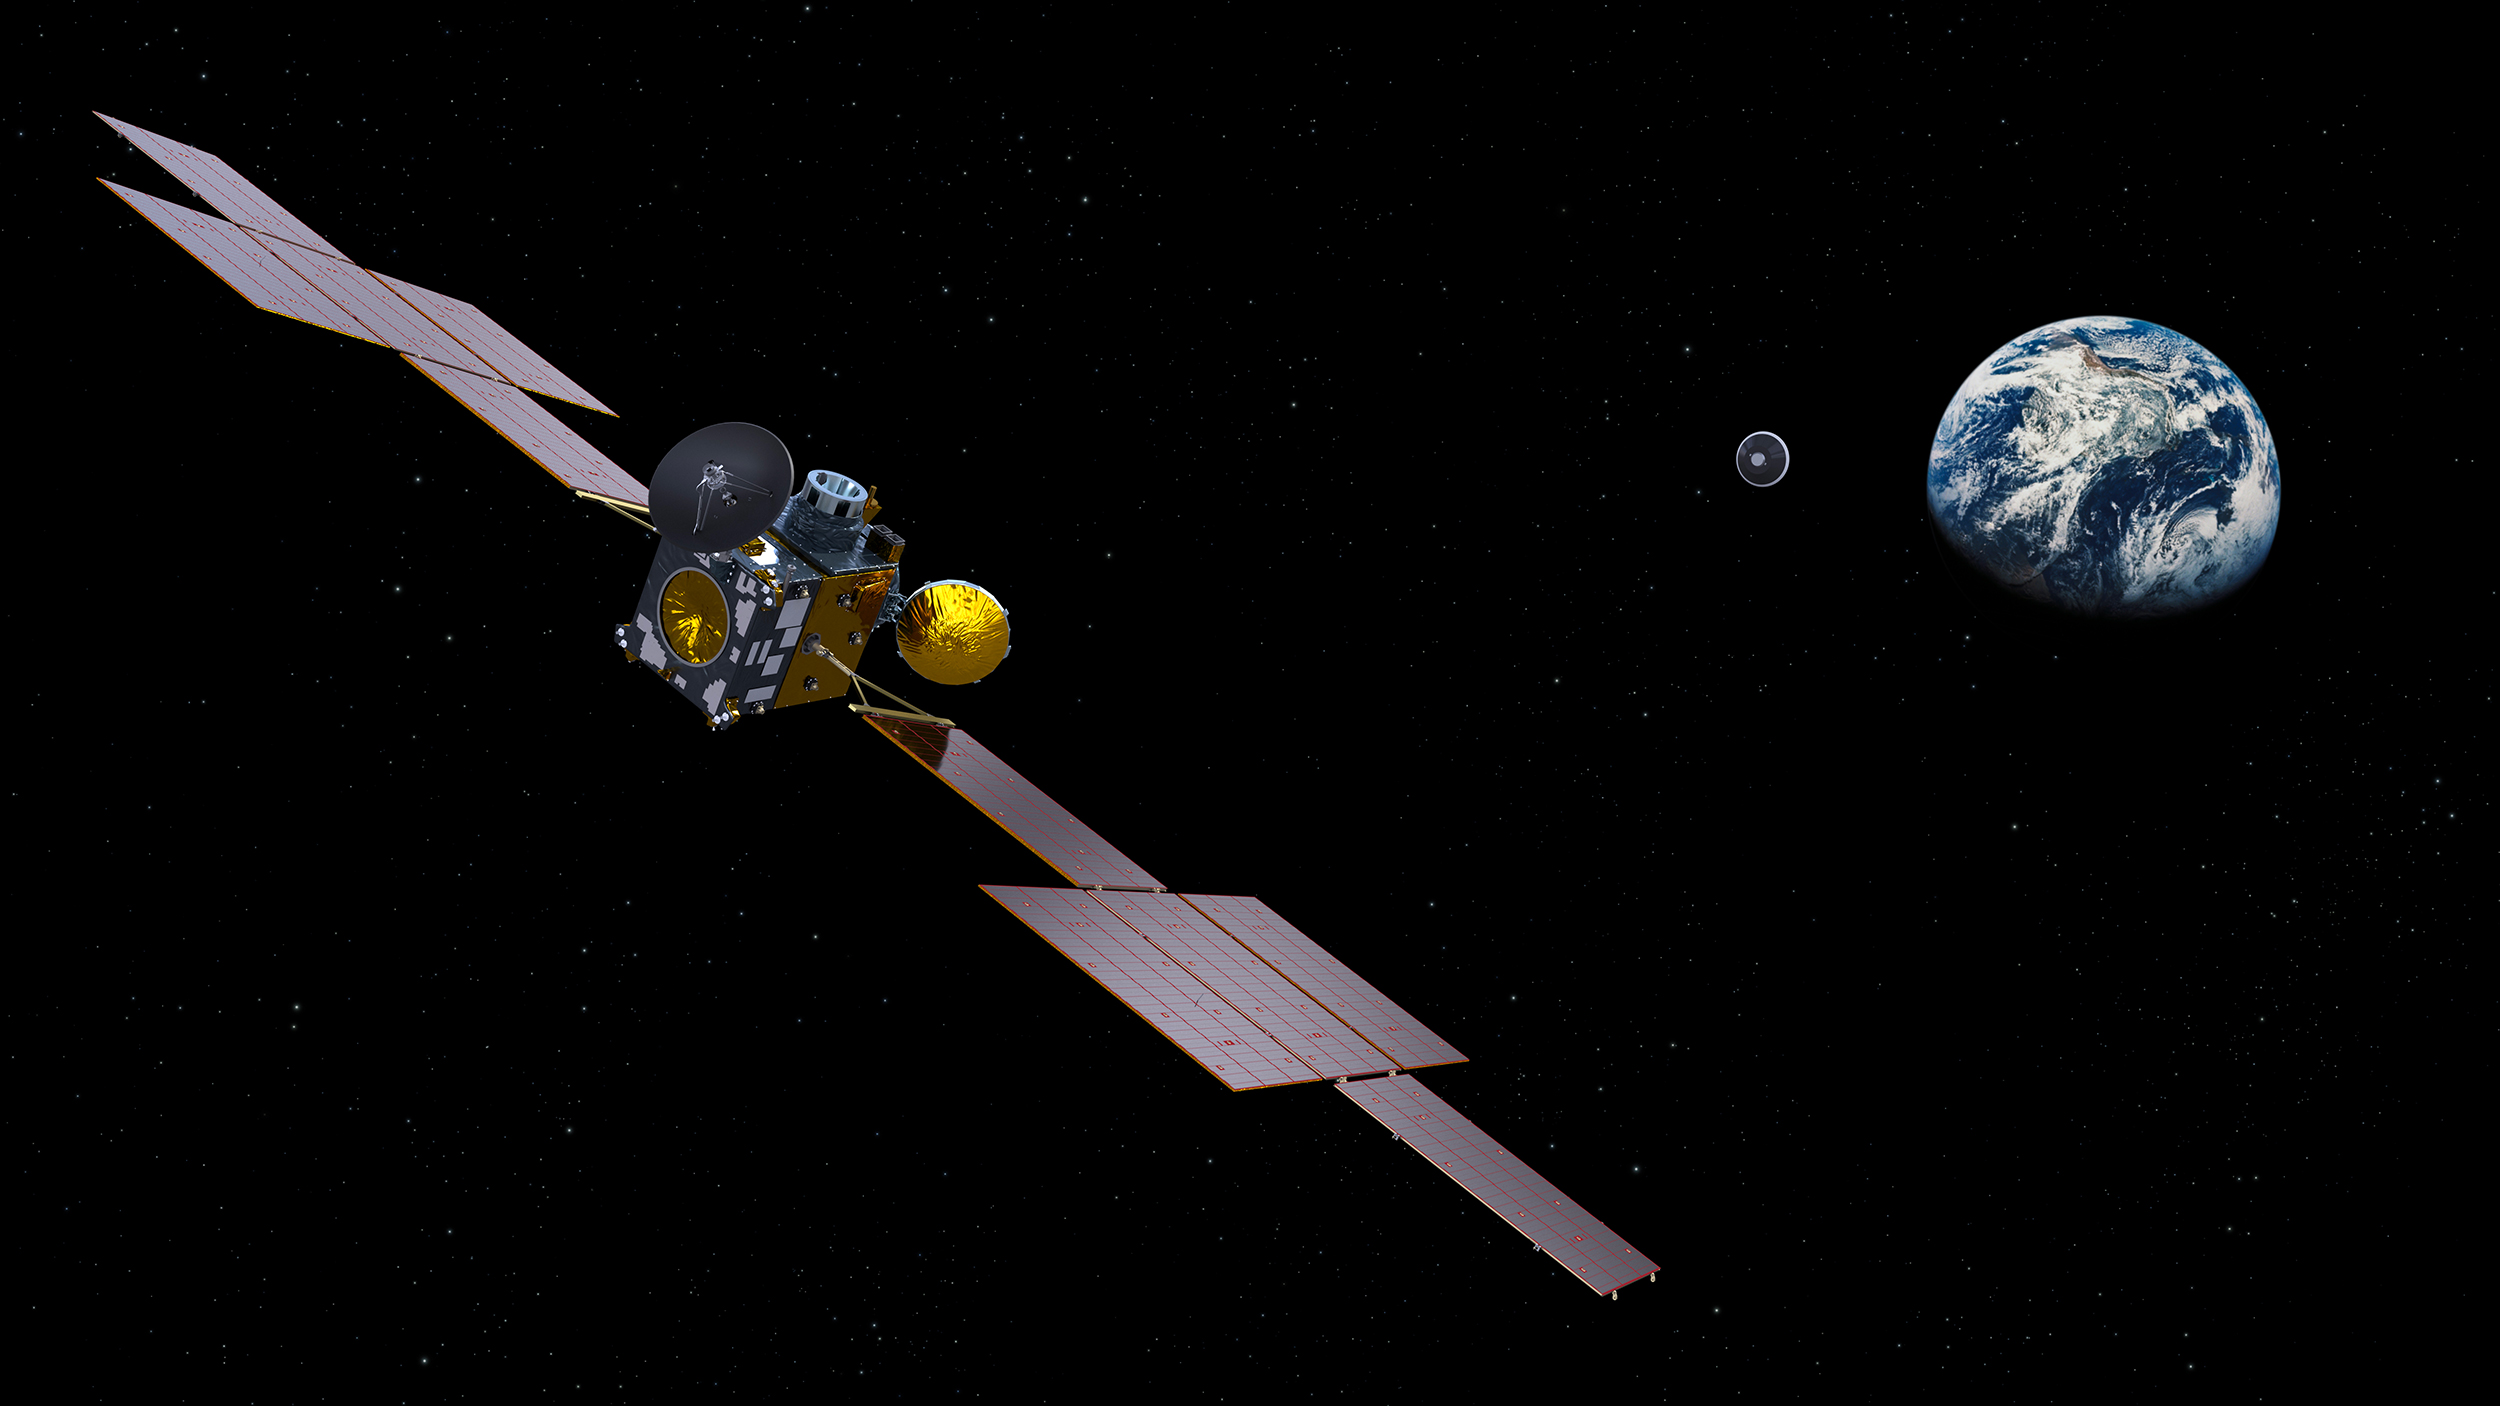 ERO (Earth Return Orbiter), le satellite de capture et de retour, de retour de Mars, larguant la capsule abritant les échantillons martiens. Notez l'absence du module d'insertion en orbite (IOM), laissé en orbite martienne. ERO sera réalisé par Airbus et le module OIM par Thales Alenia Space sous la maîtrise d'œuvre d'Airbus. © ESA, ATG-Medialab